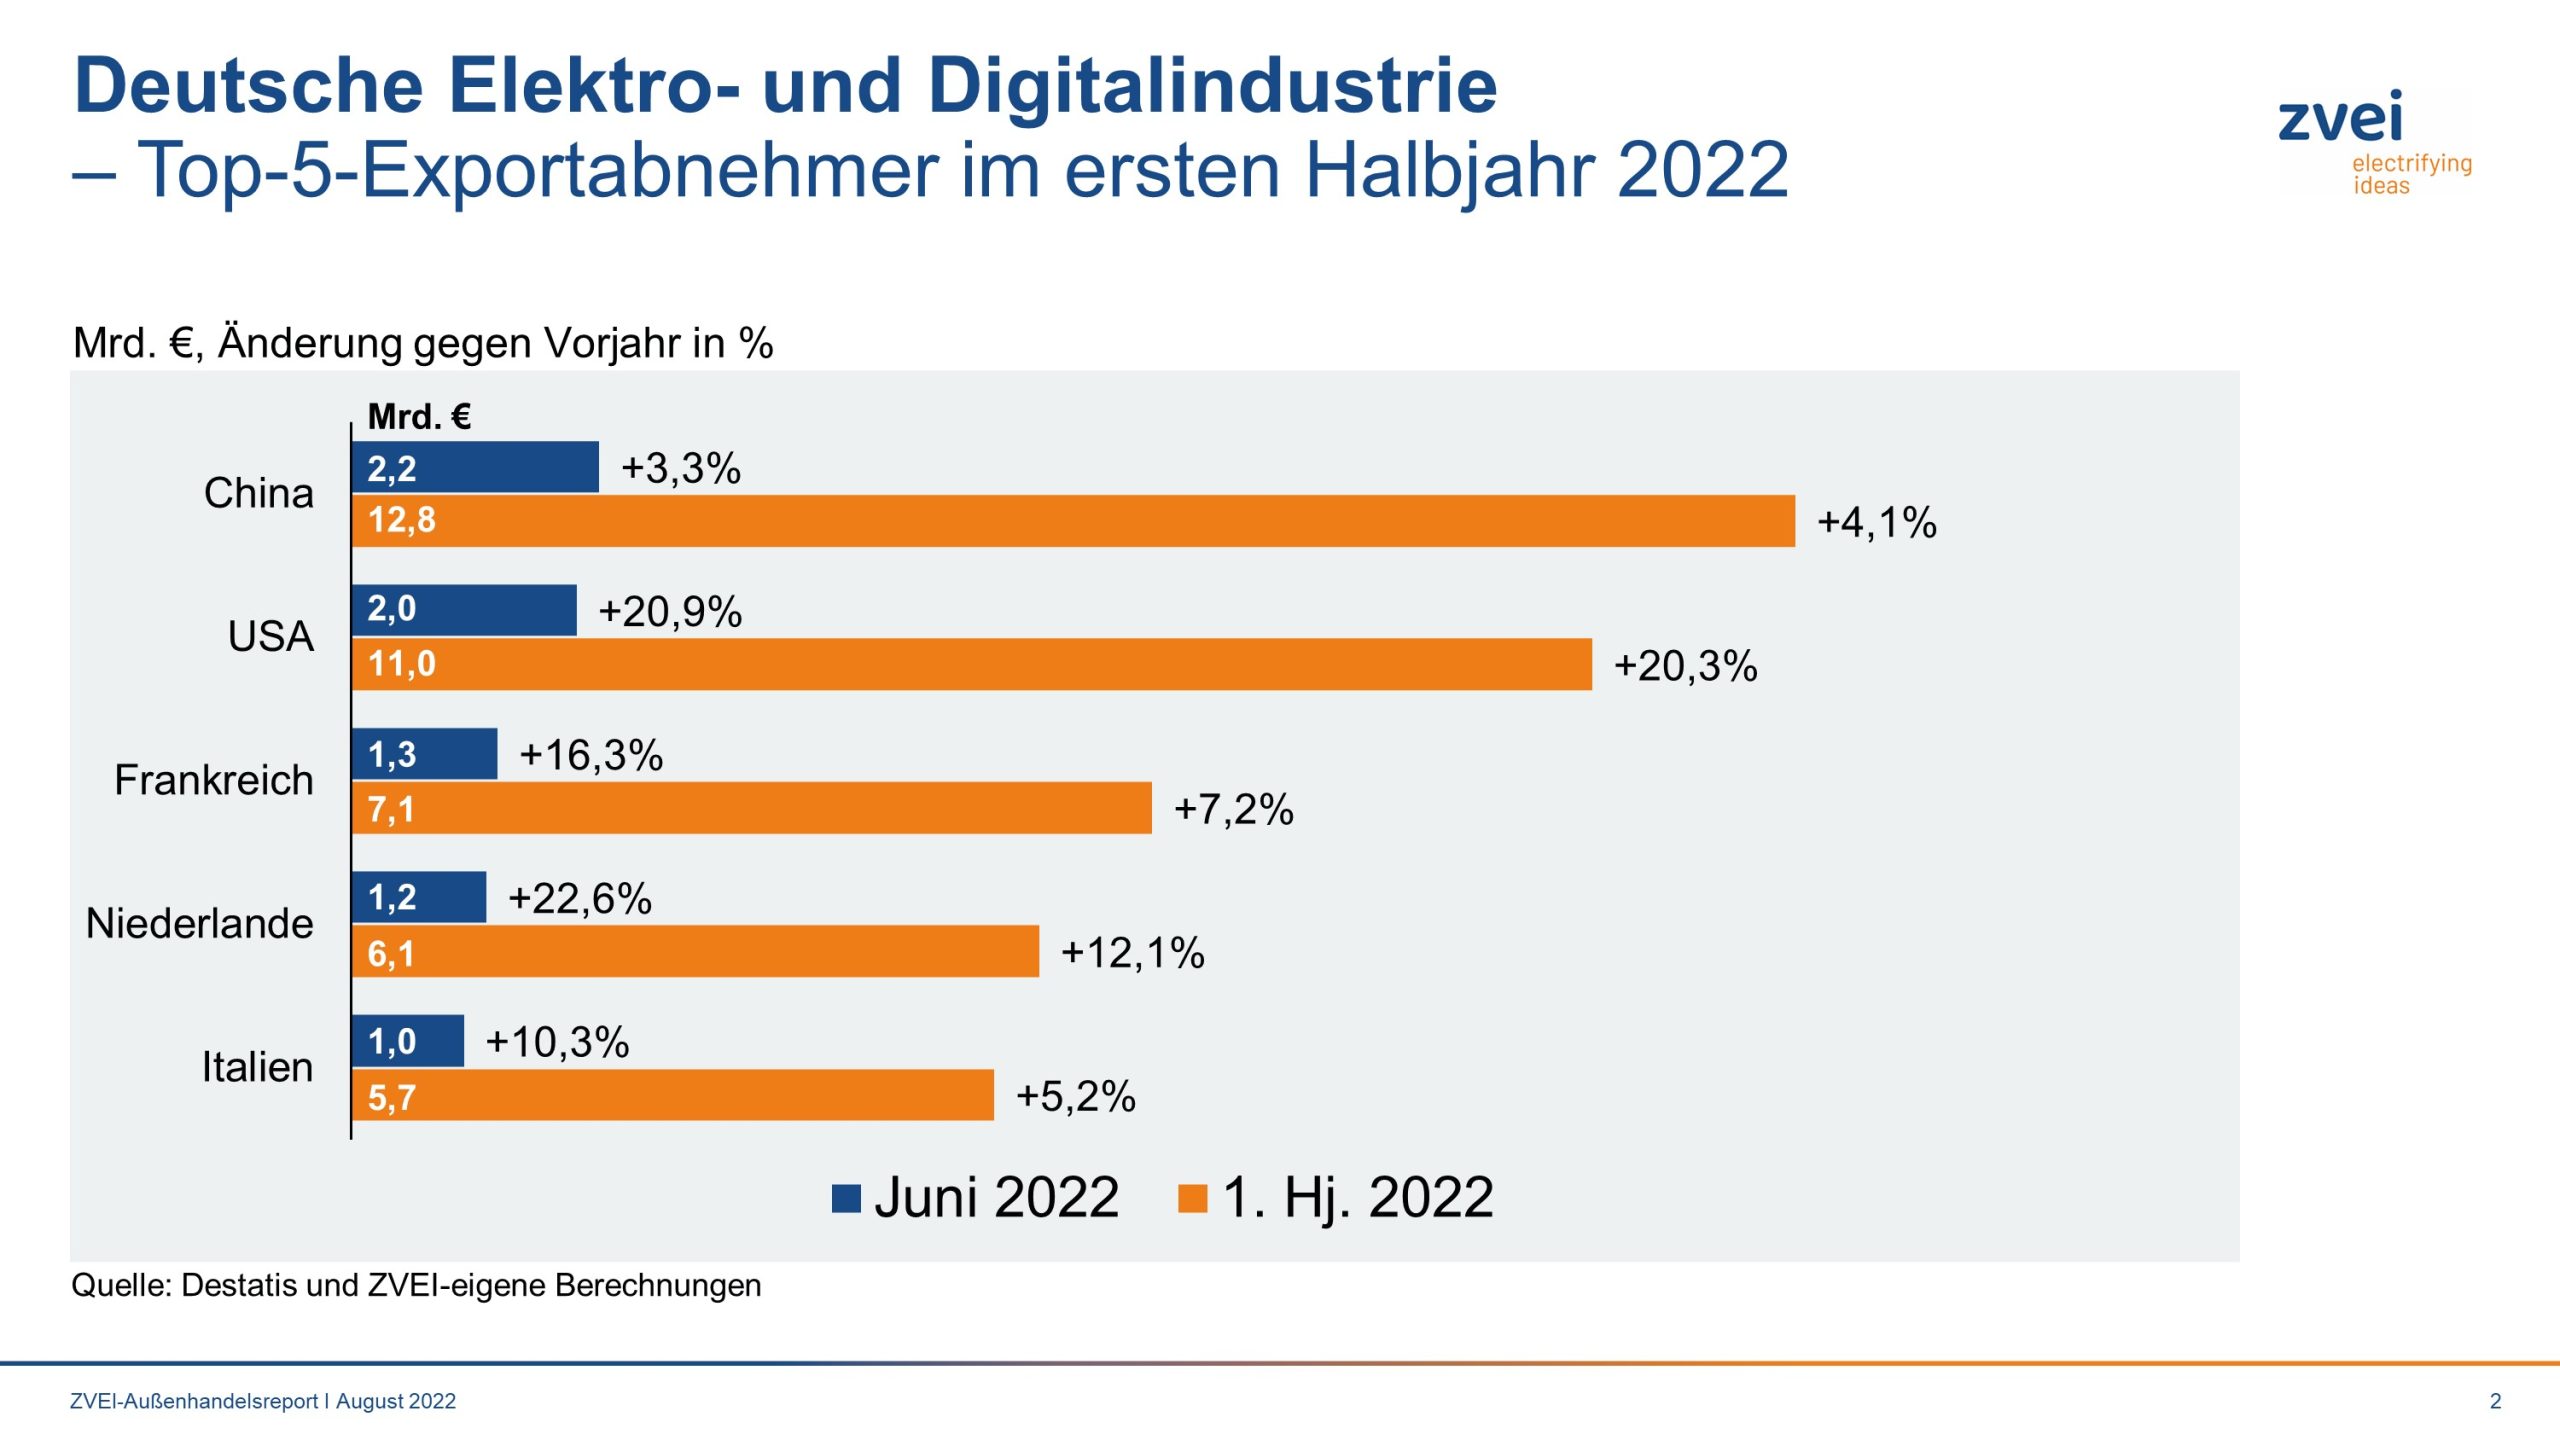 Deutsche Elektroindustrie: Top5-Exportabnehmer 1. Halbjahr 2022